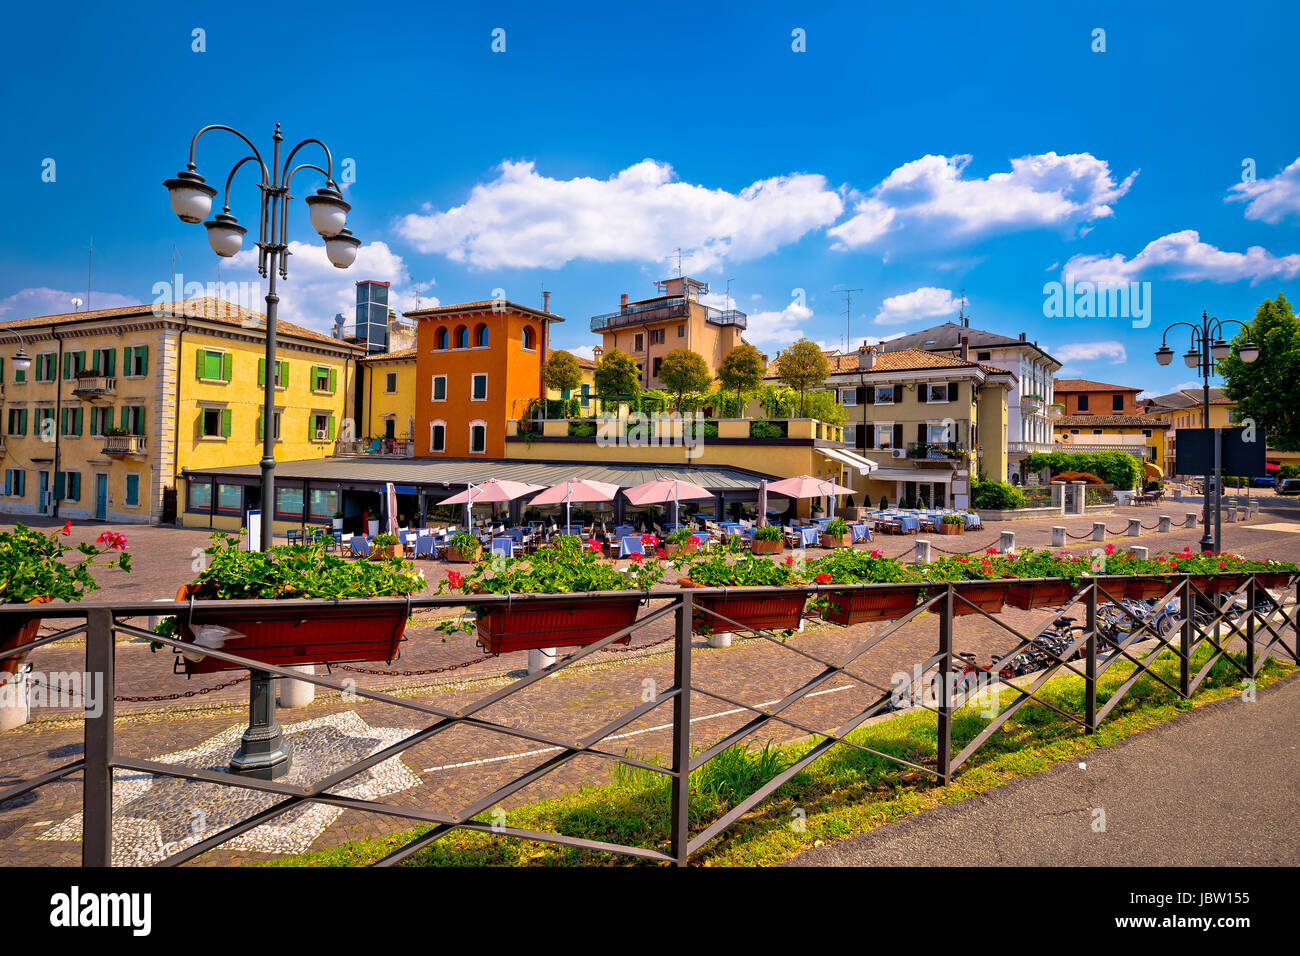 Peschiera del Garda colorful architecture view, Lago di Garda, Veneto region of Italy Stock Photo